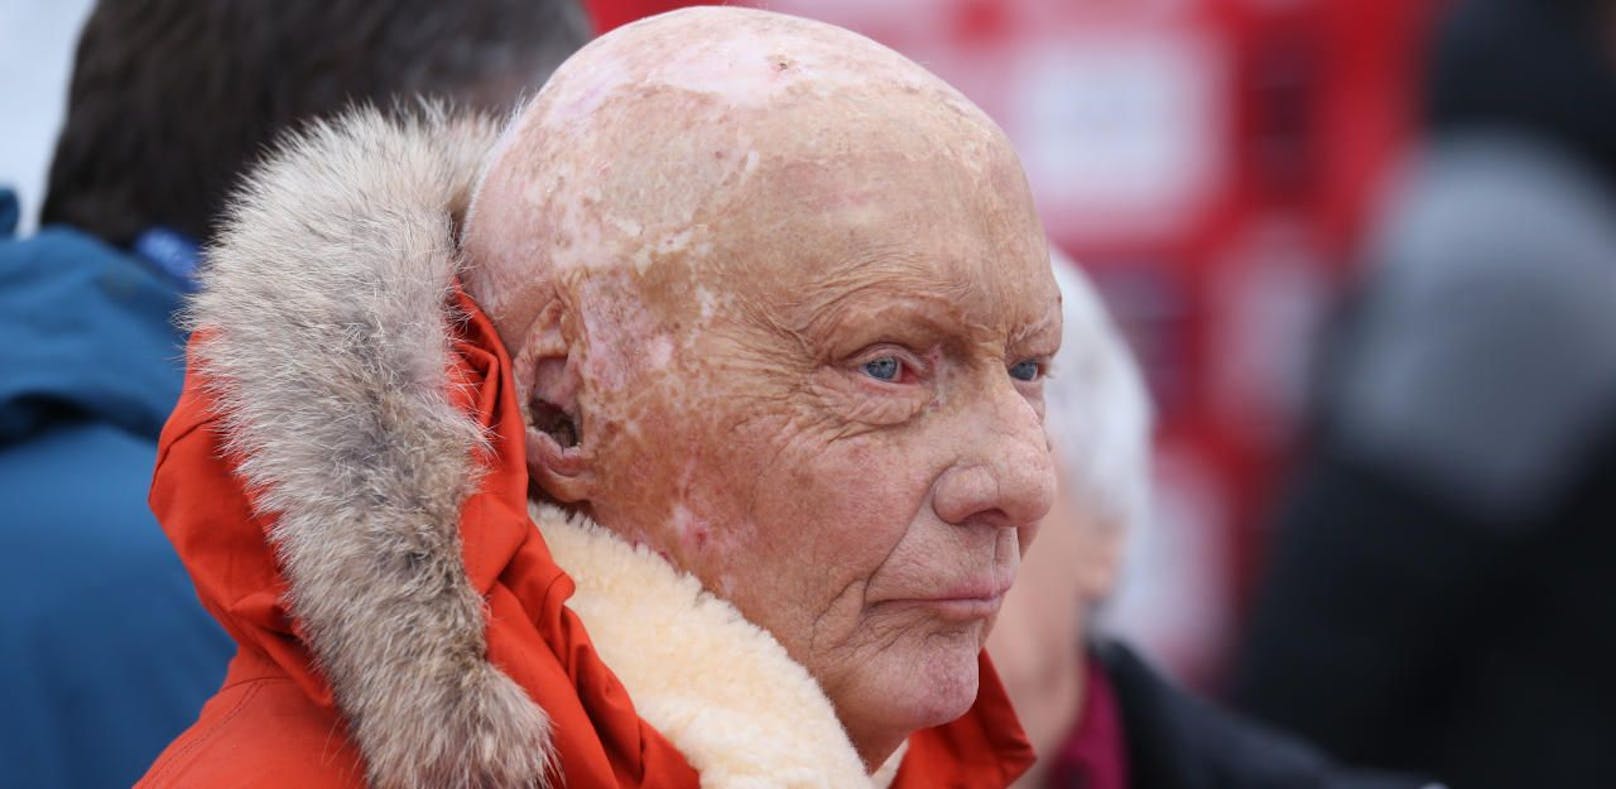 Niki Lauda lüftete seine rote Kappe und wäre pleite, wenn aus LaudaMotion nichts wird.